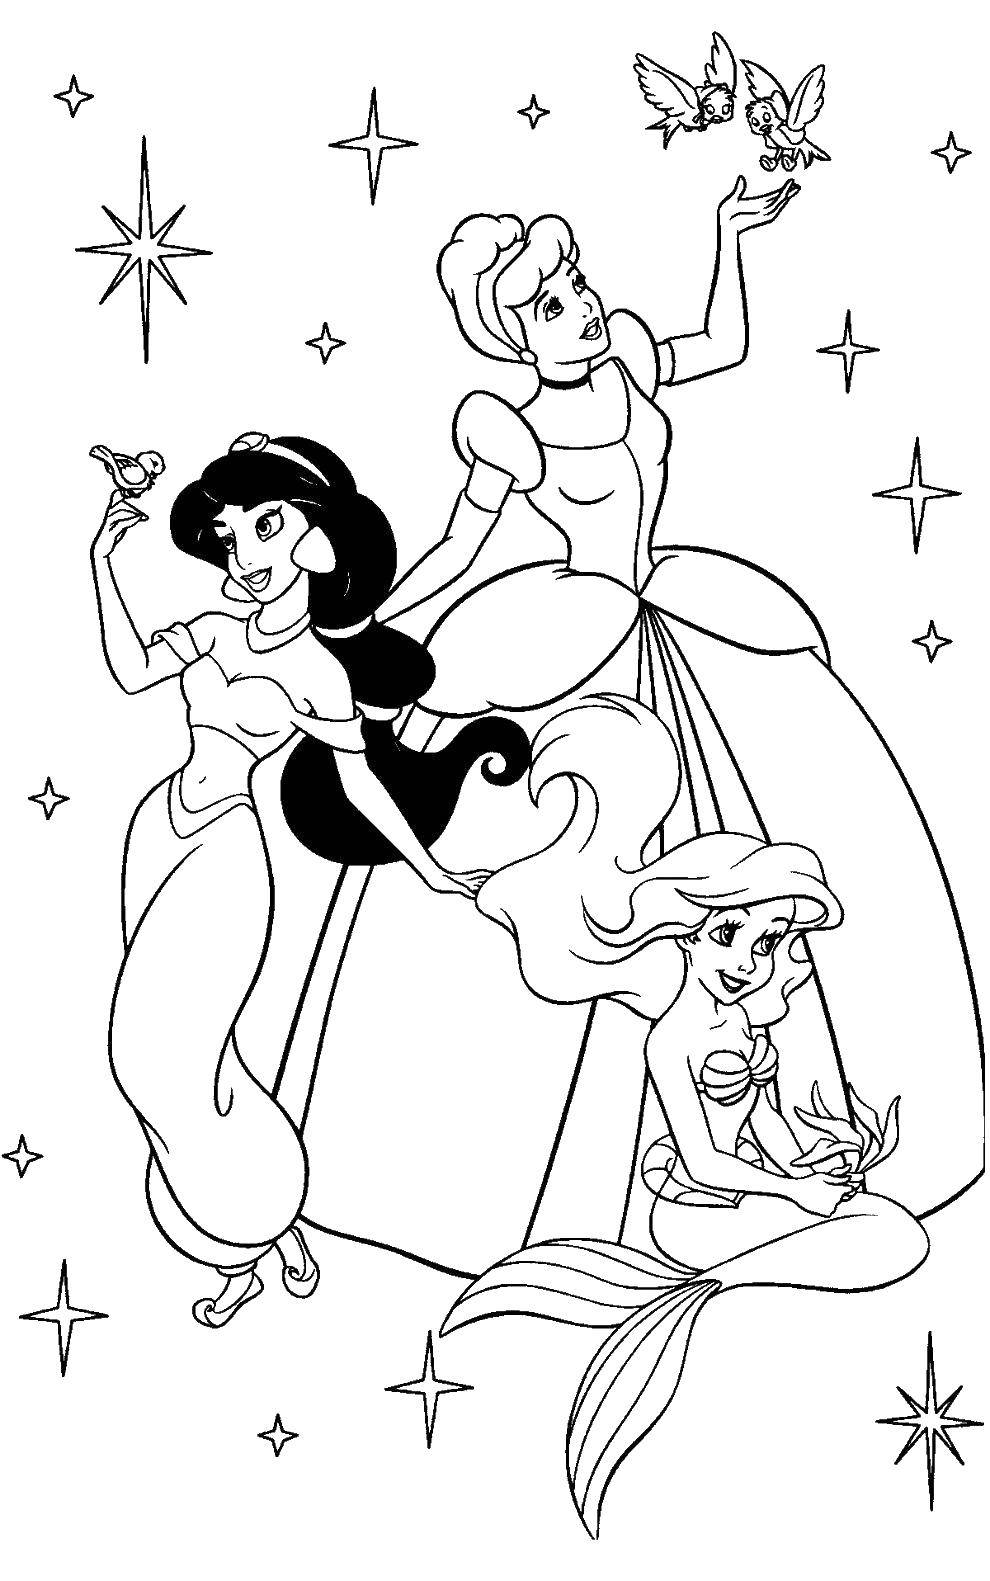 Coloring Jasmine, Cinderella, Ariel. Category Princess. Tags:  princesses, Jasmine, Cinderella, Ariel, Disney.